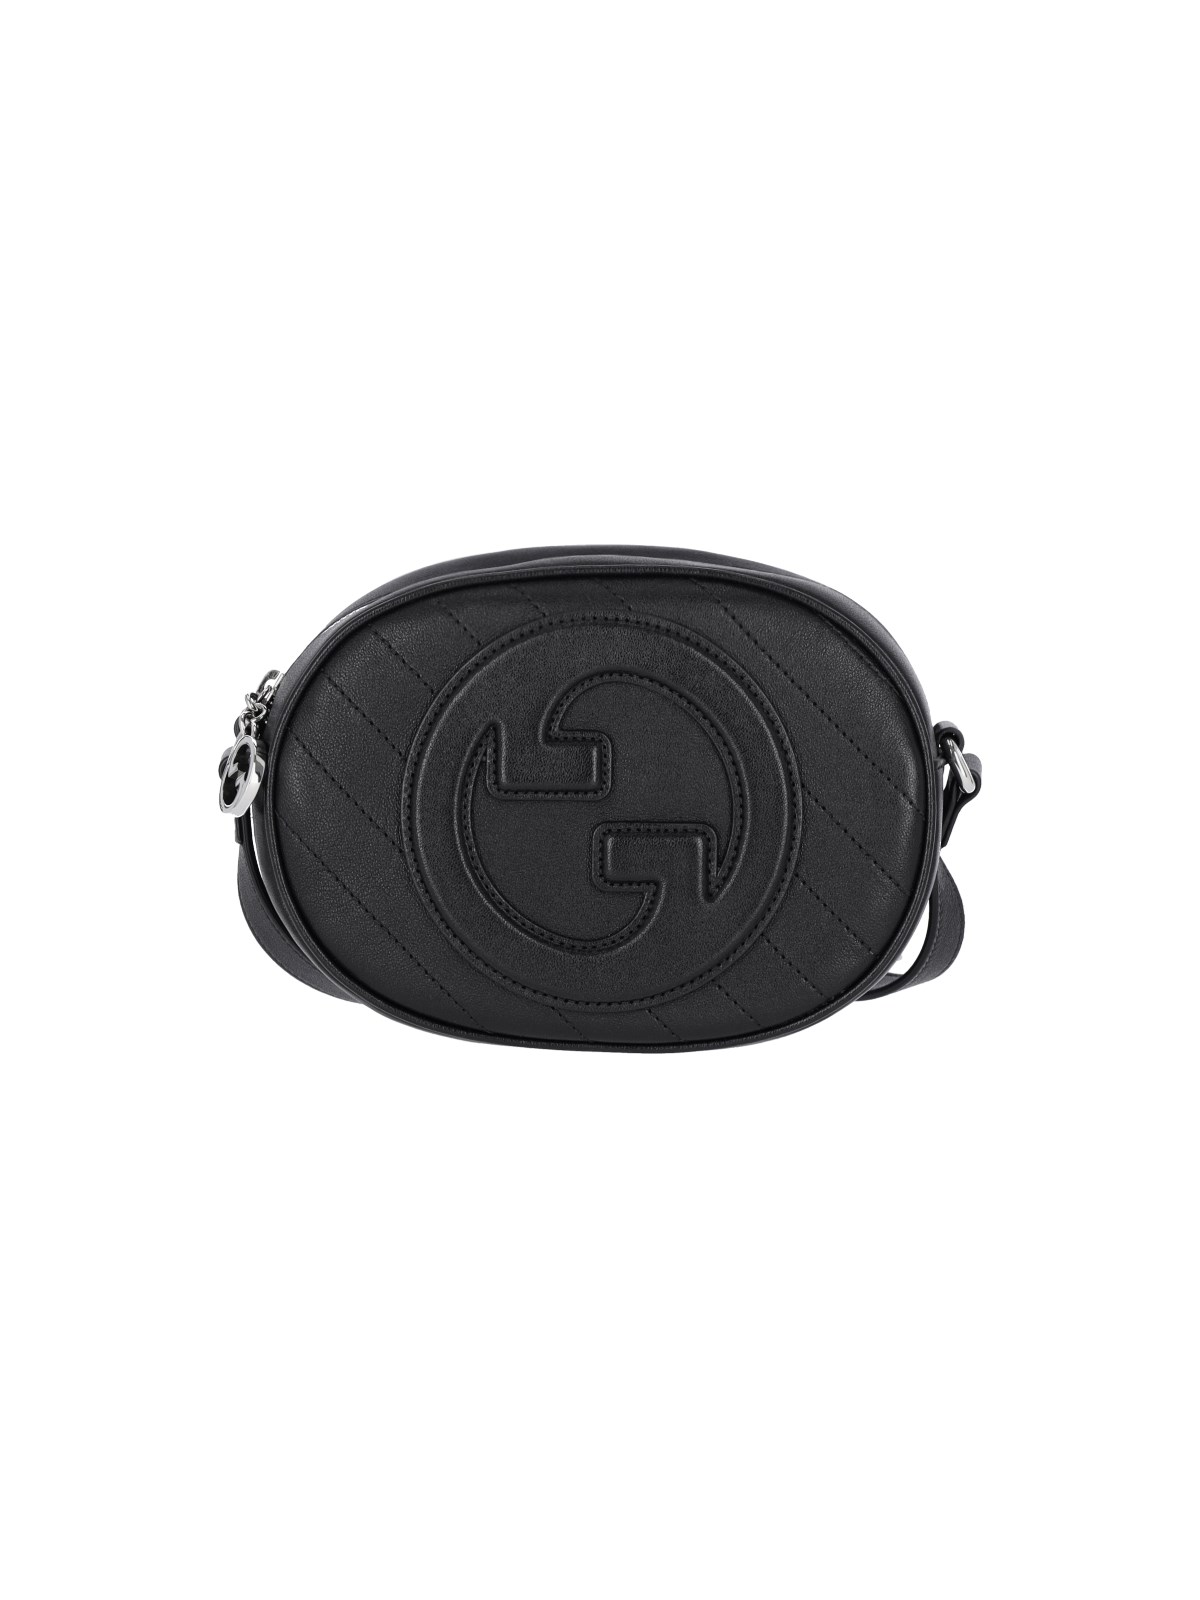 Gucci Black Blondie Leather Shoulder Bag In Black  